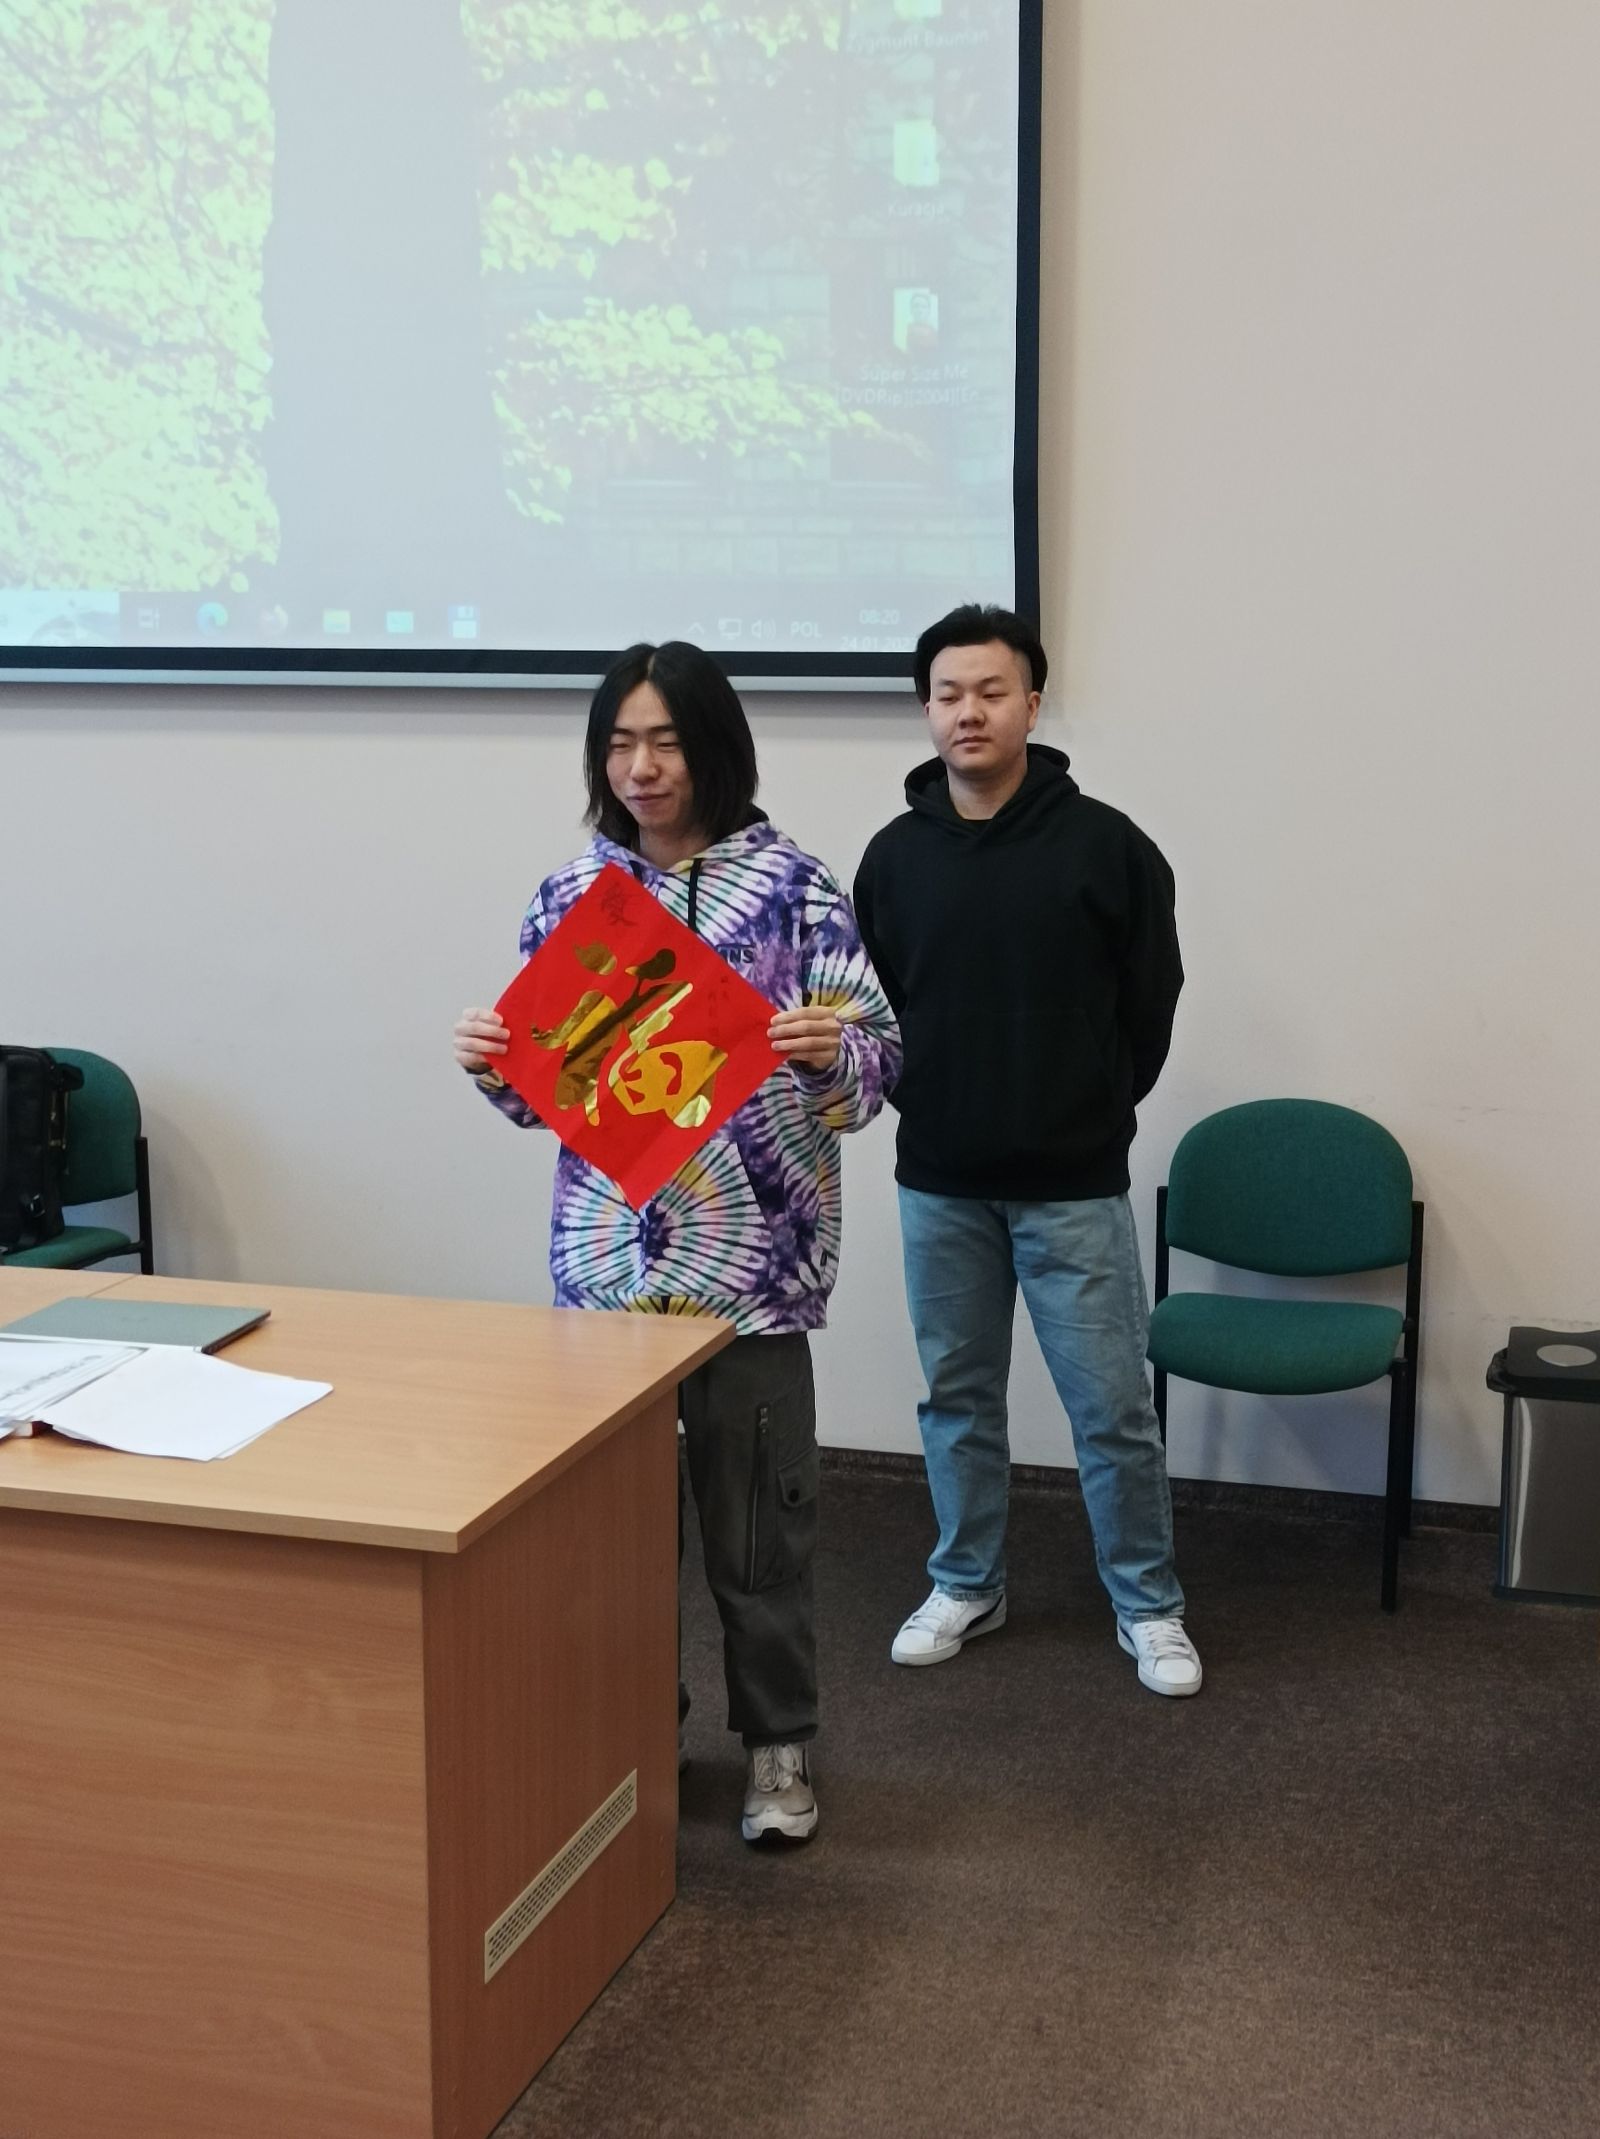 Dwaj studenci z Chin wygłaszają prezentację o chińskim Nowym roku, pokazując zebranym tradycyjną czerwoną kopertę.